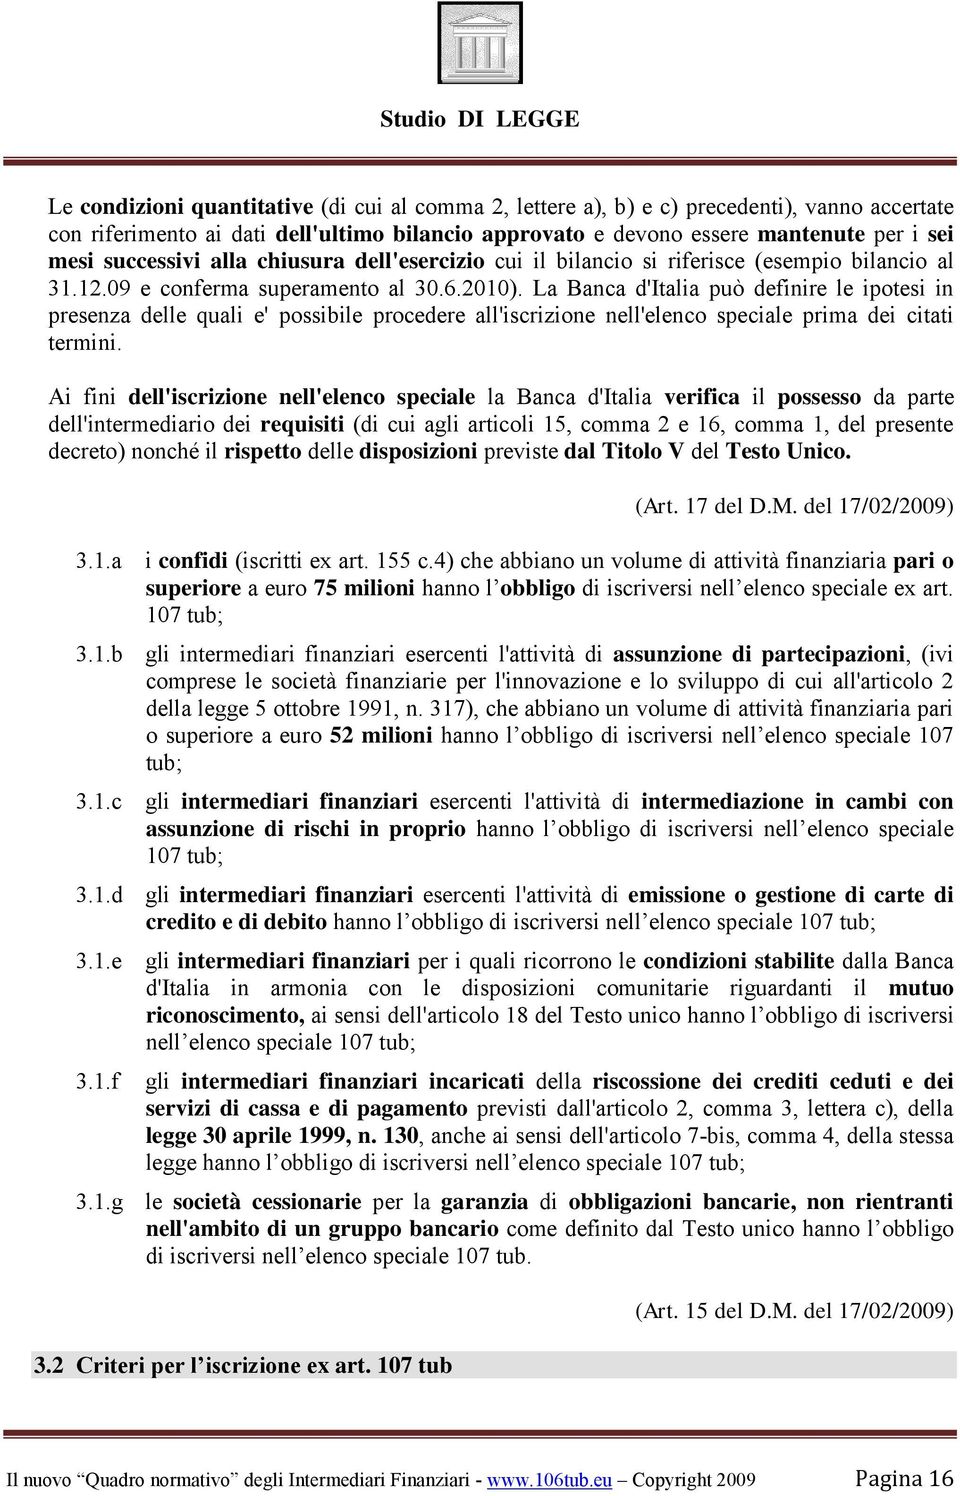 La Banca d'italia può definire le ipotesi in presenza delle quali e' possibile procedere all'iscrizione nell'elenco speciale prima dei citati termini.